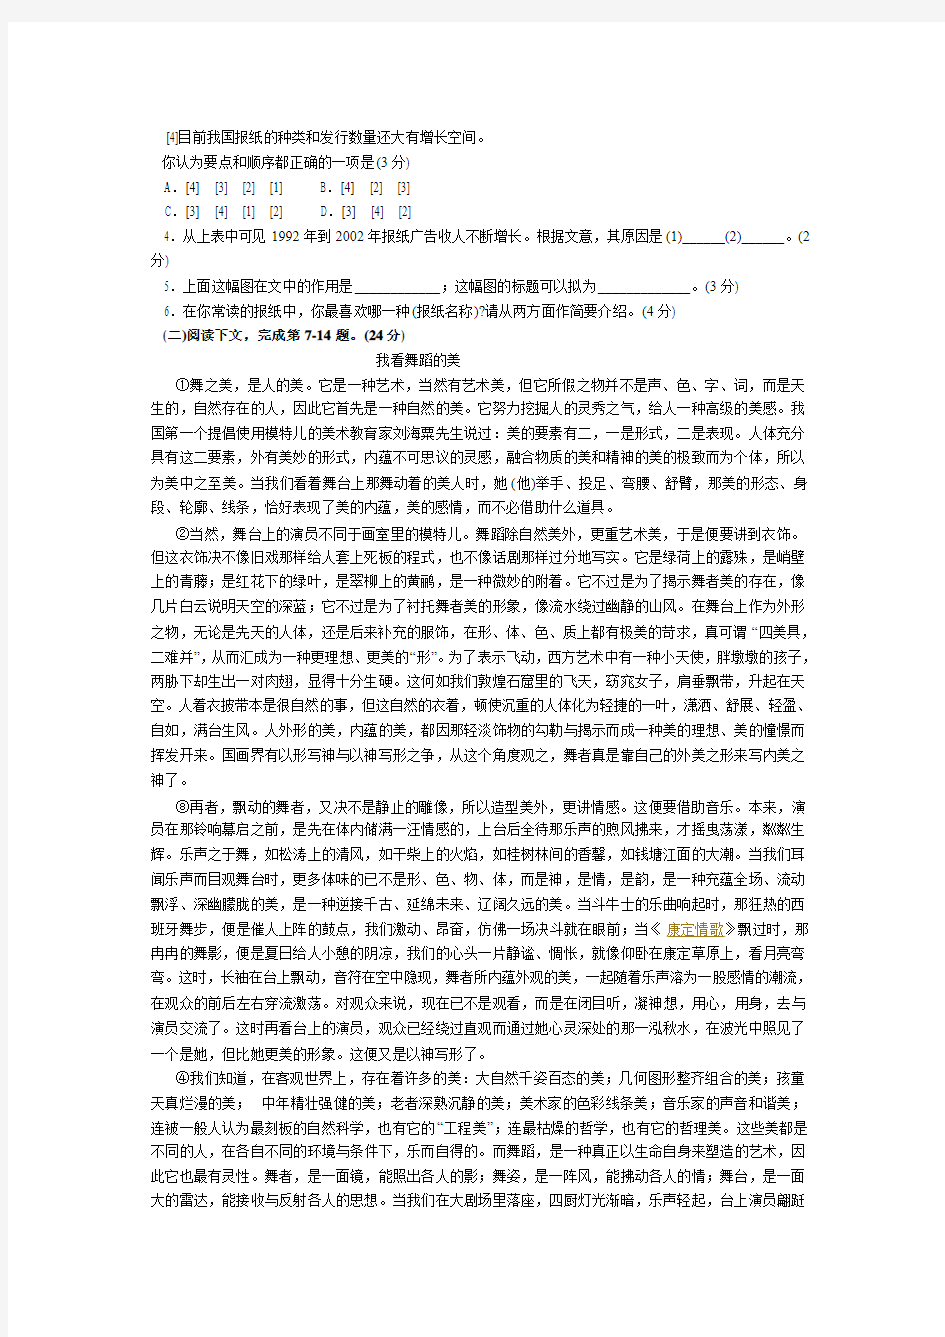 2004年高考语文试题及答案详解(上海卷)